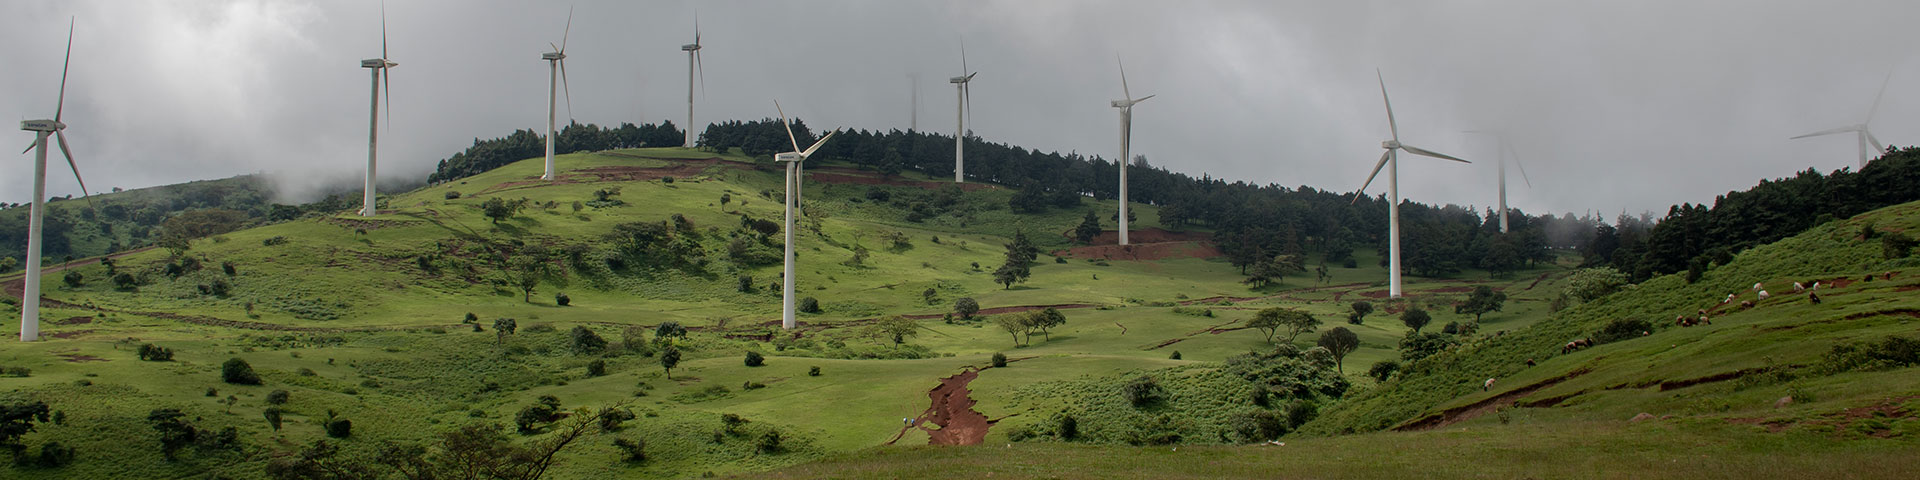 Mehrere Windkraftanlagen mitten in einer grünen Landschaft.